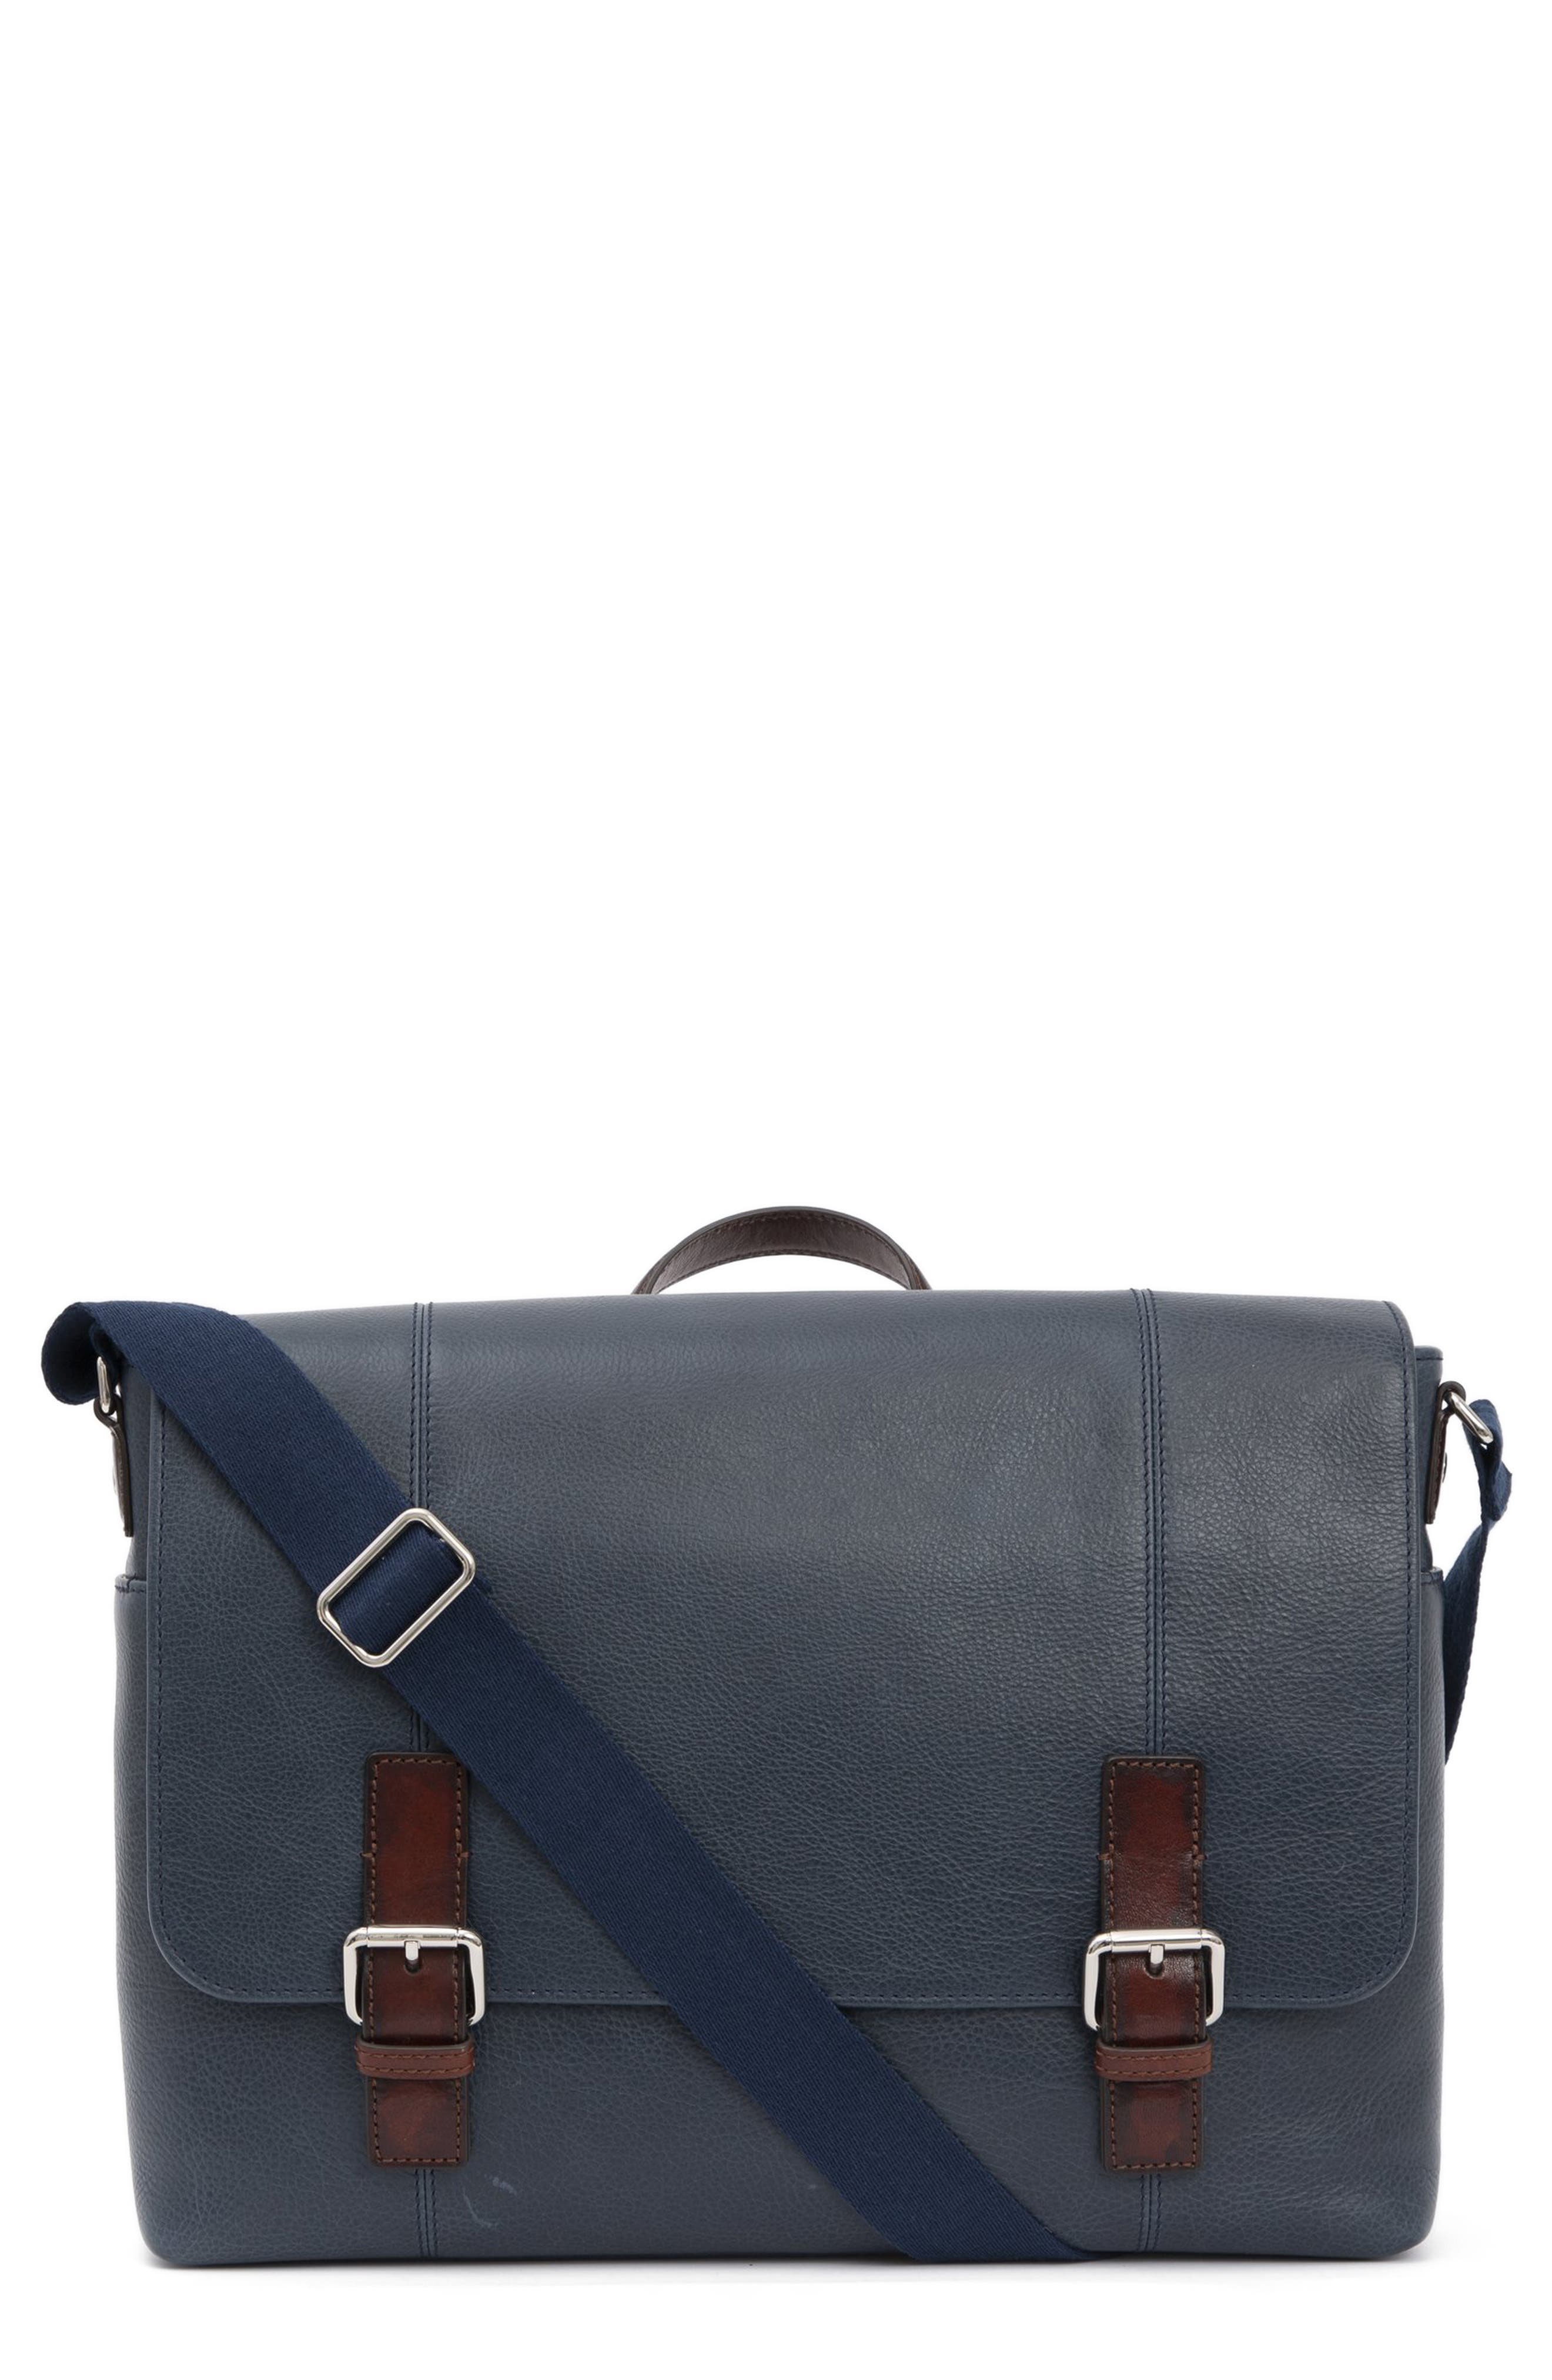 Blue Flame Skull Printed Laptop Shoulder Bag,Laptop case Handbag Business Messenger Bag Briefcase 